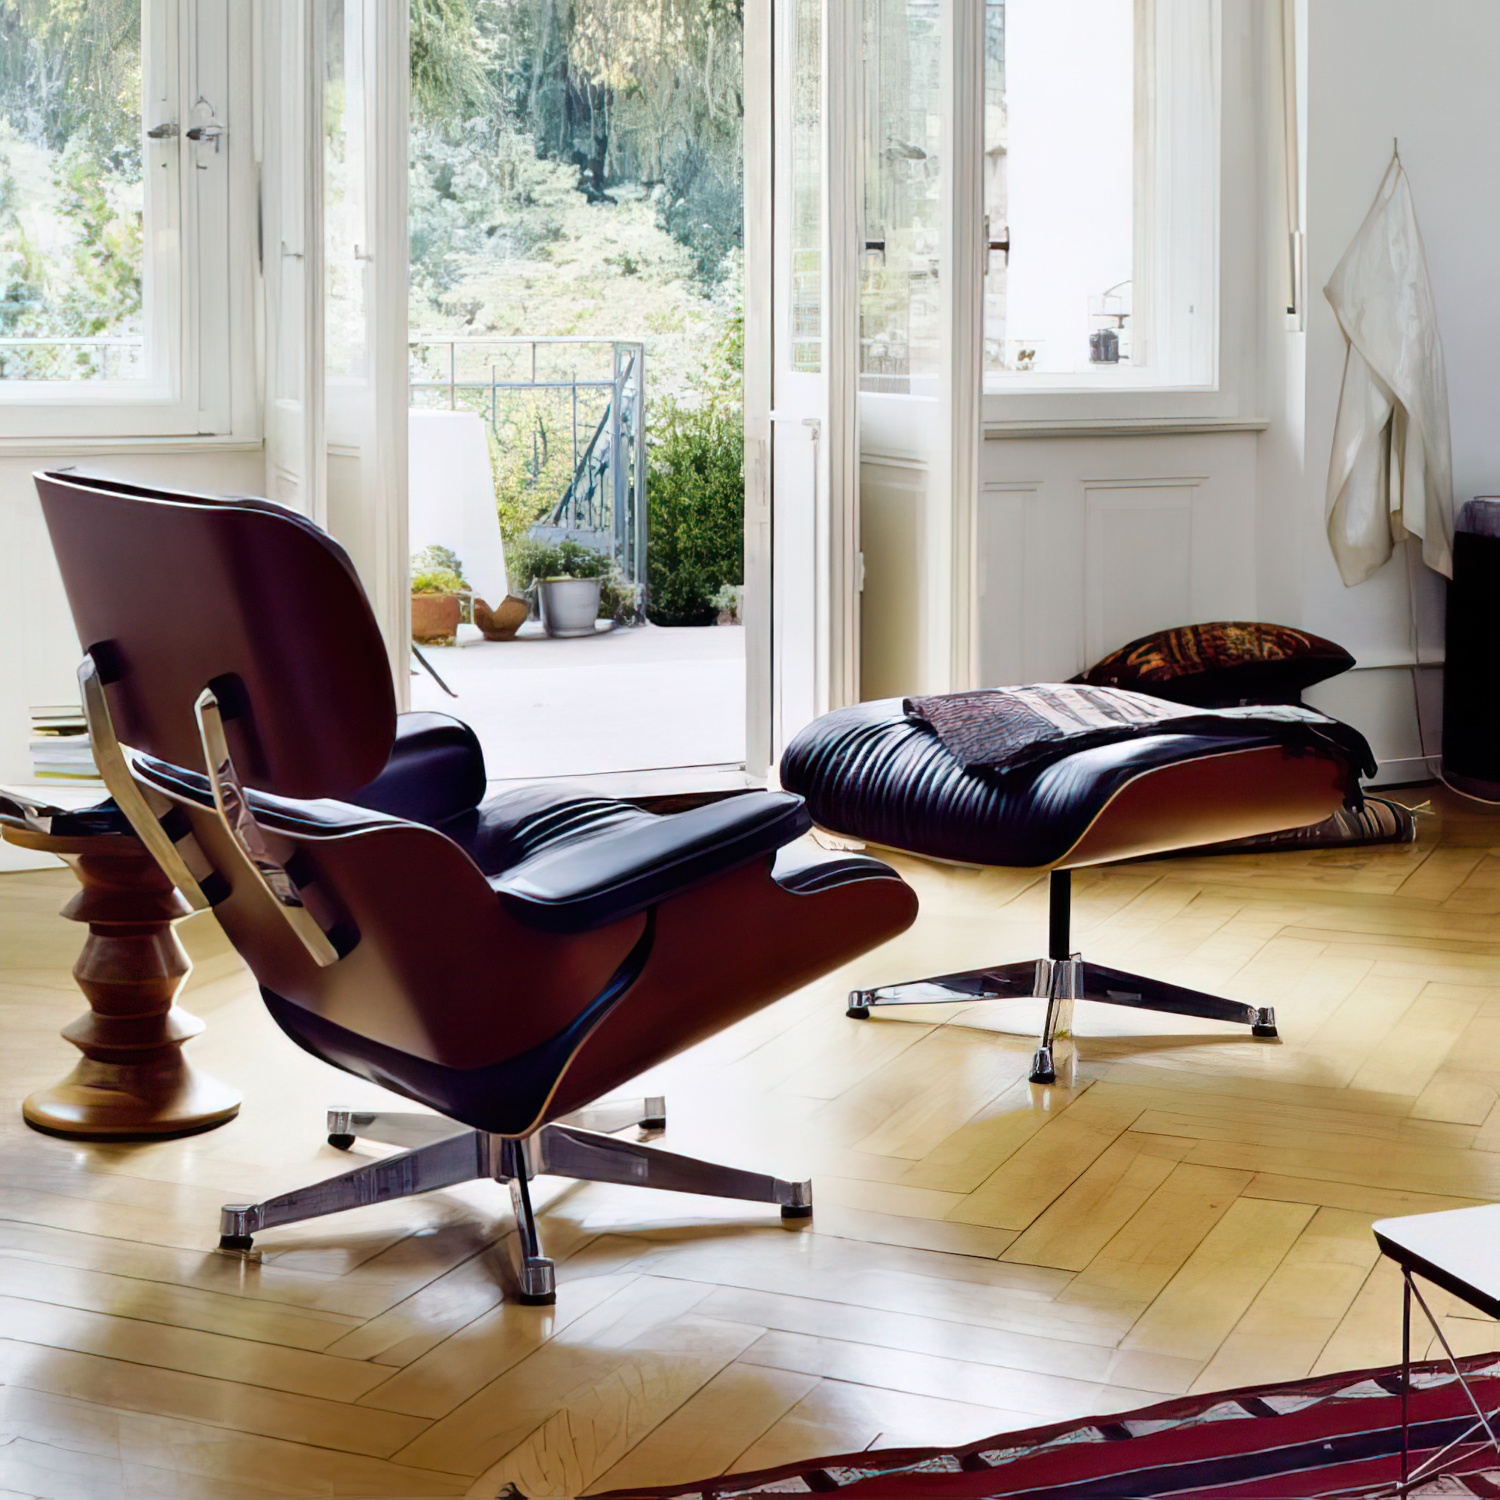 Lounge Chair und Ottoman 41212500 Nussbaumschale Gestell schwarz Leder in Braun